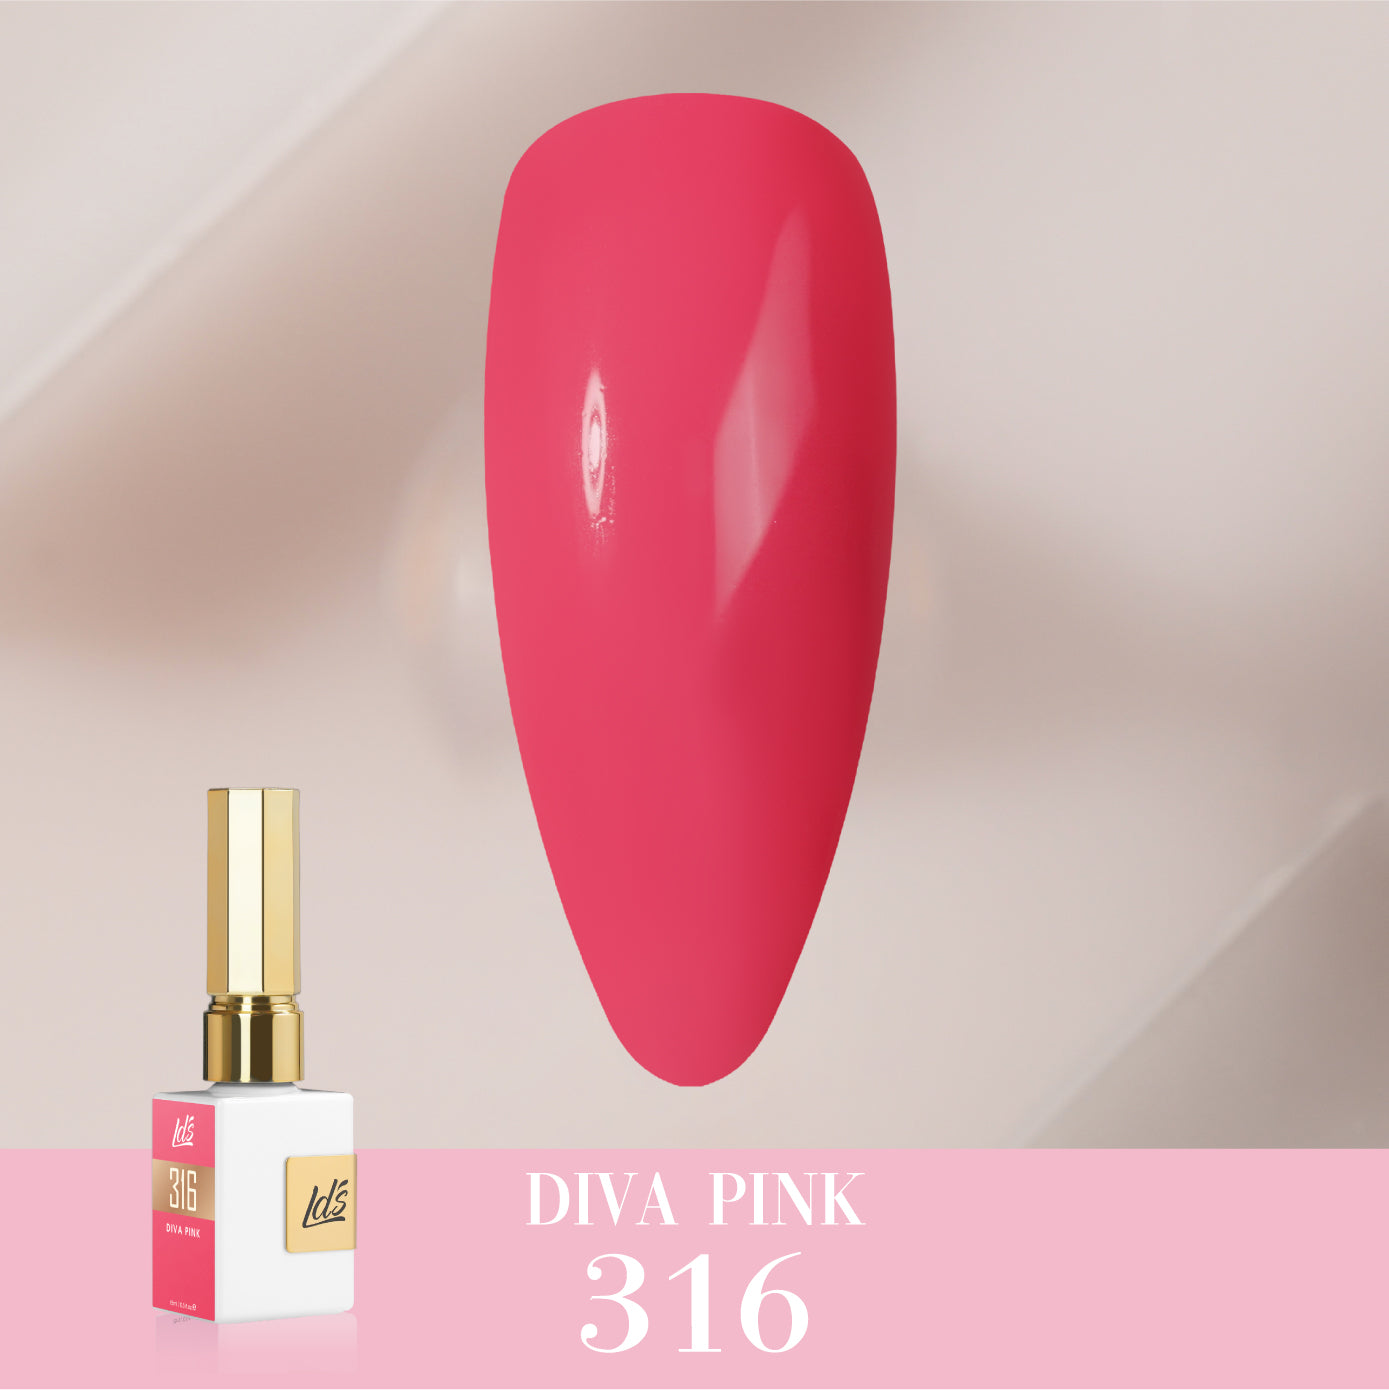 LDS Color Craze Collection - 316 Diva Pink - Gel Polish 0.5oz